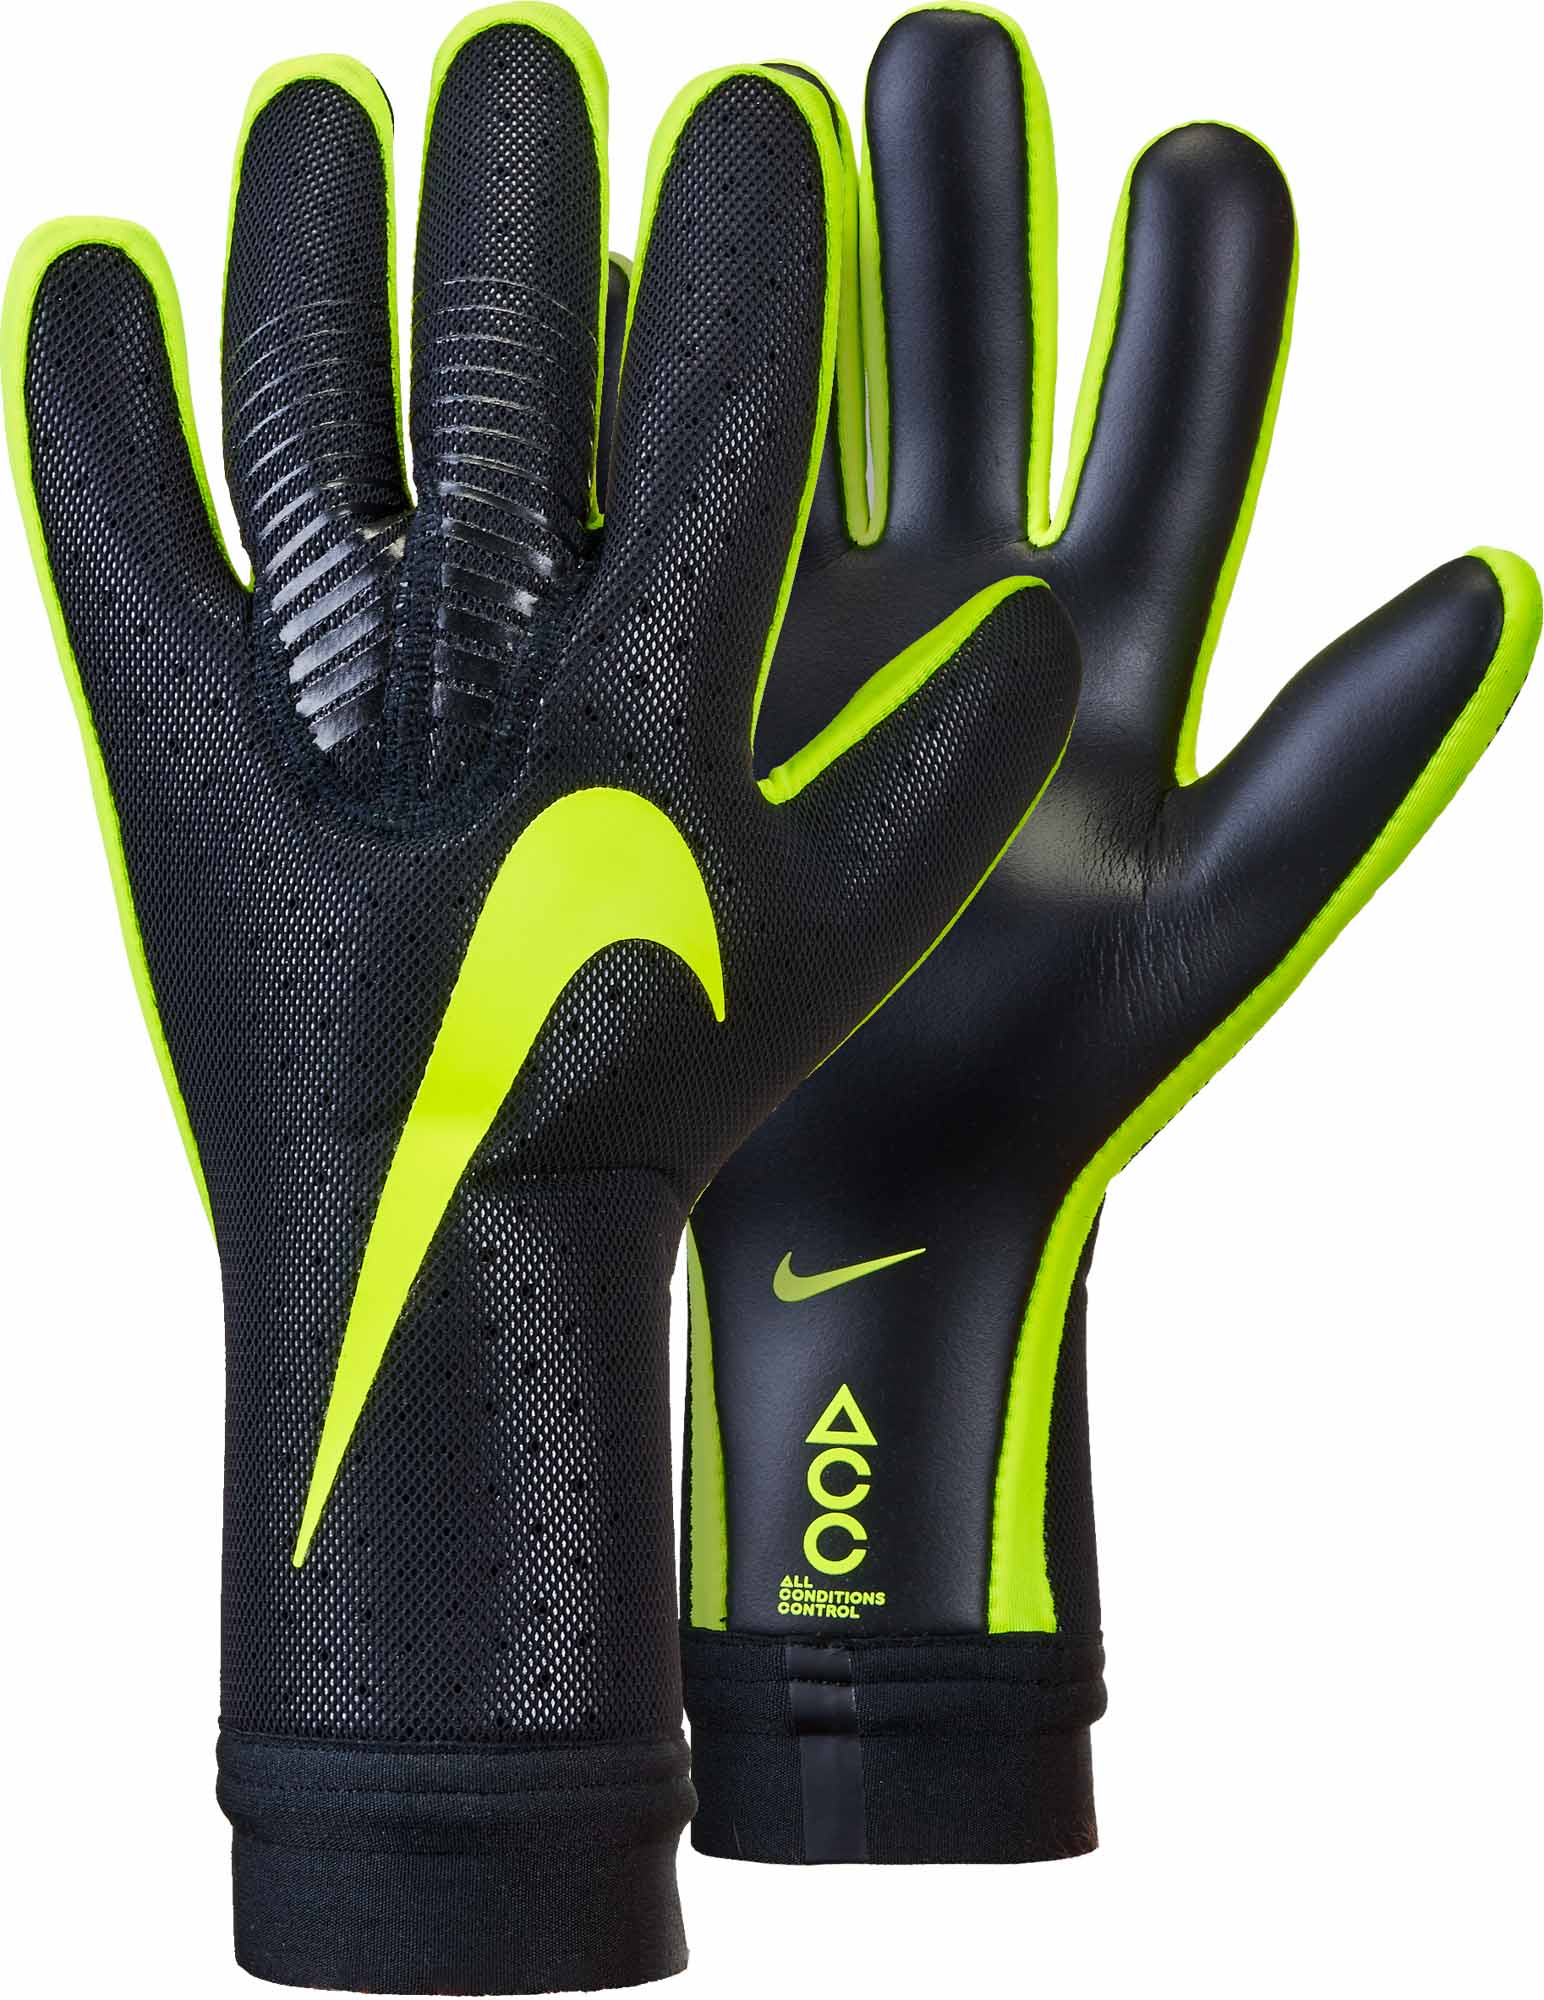 new nike goalie gloves